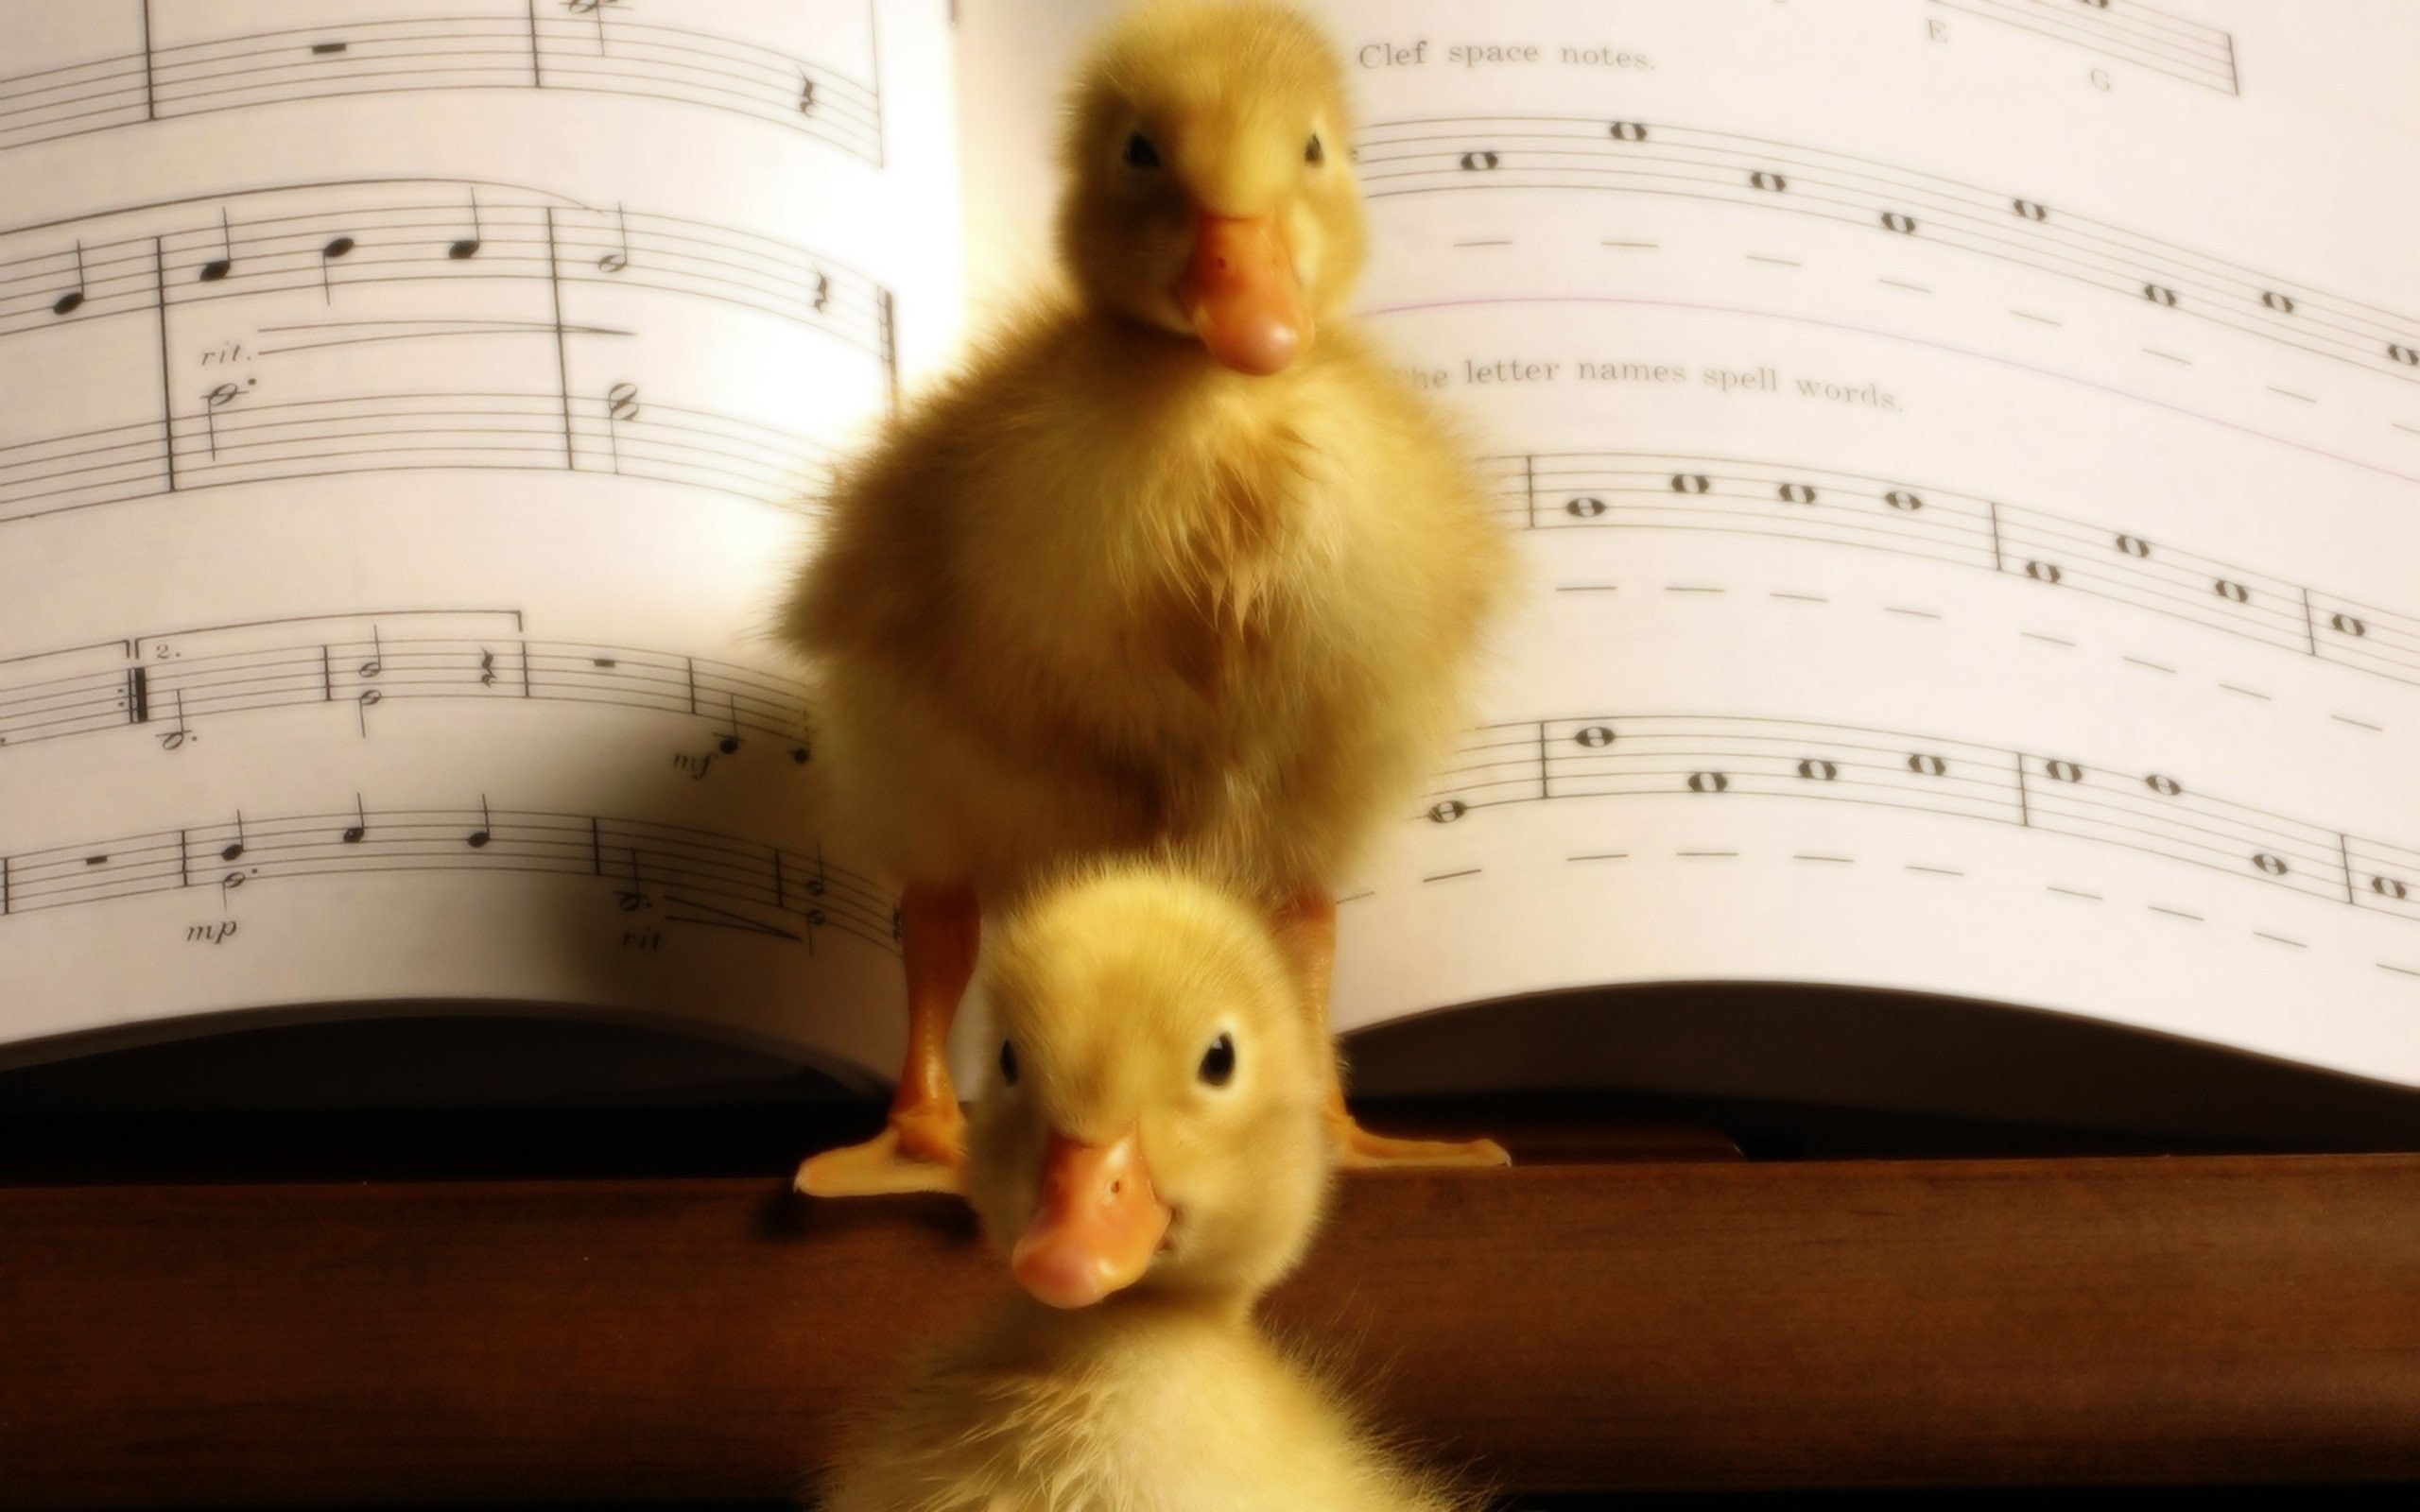 2560x1600 Birds animals ducks duckling musical musical notes baby birds wallpaper |   | 236569 | WallpaperUP